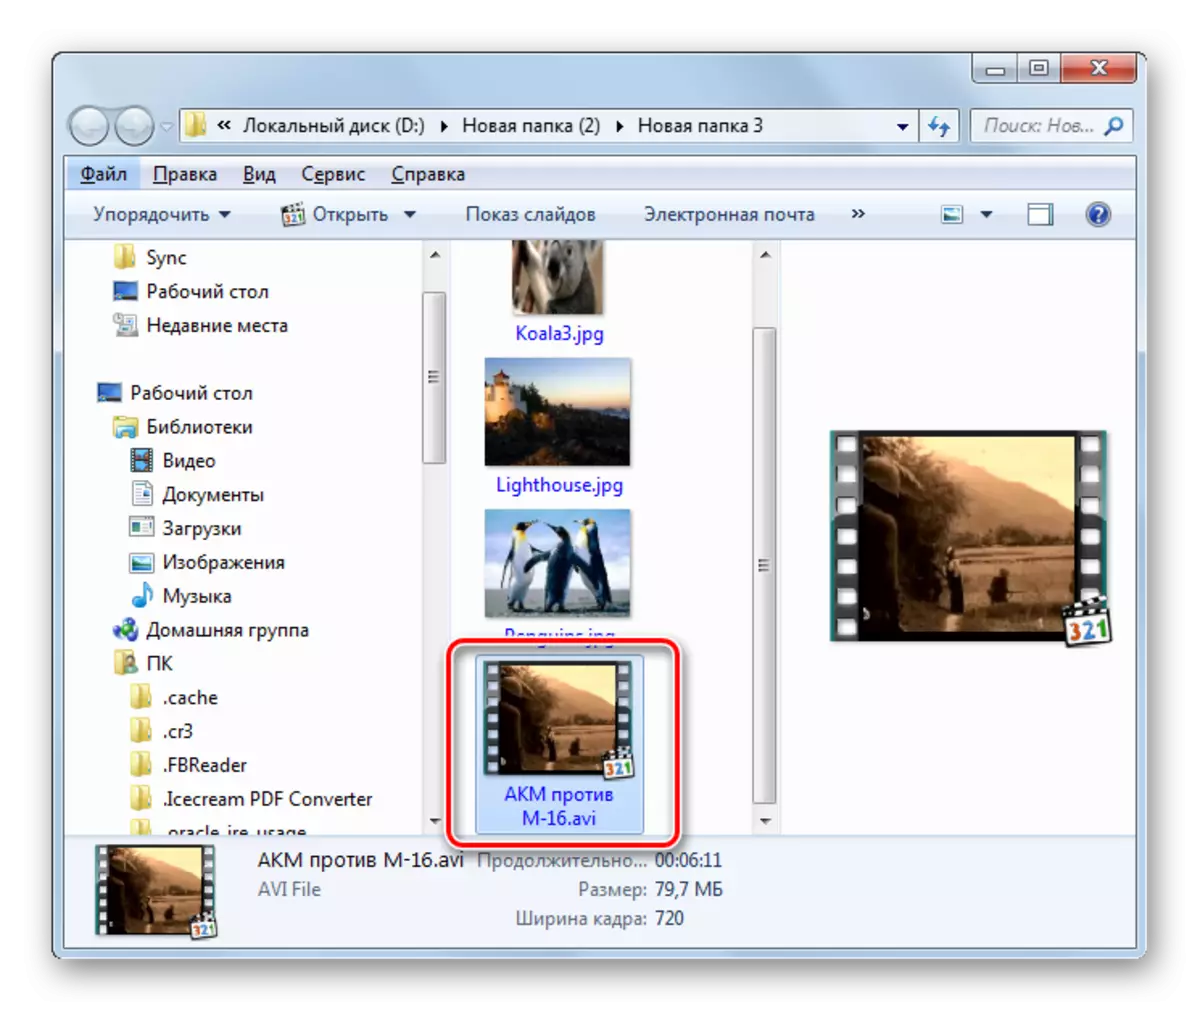 File transformasi dina format AVI dina Windows Explorer